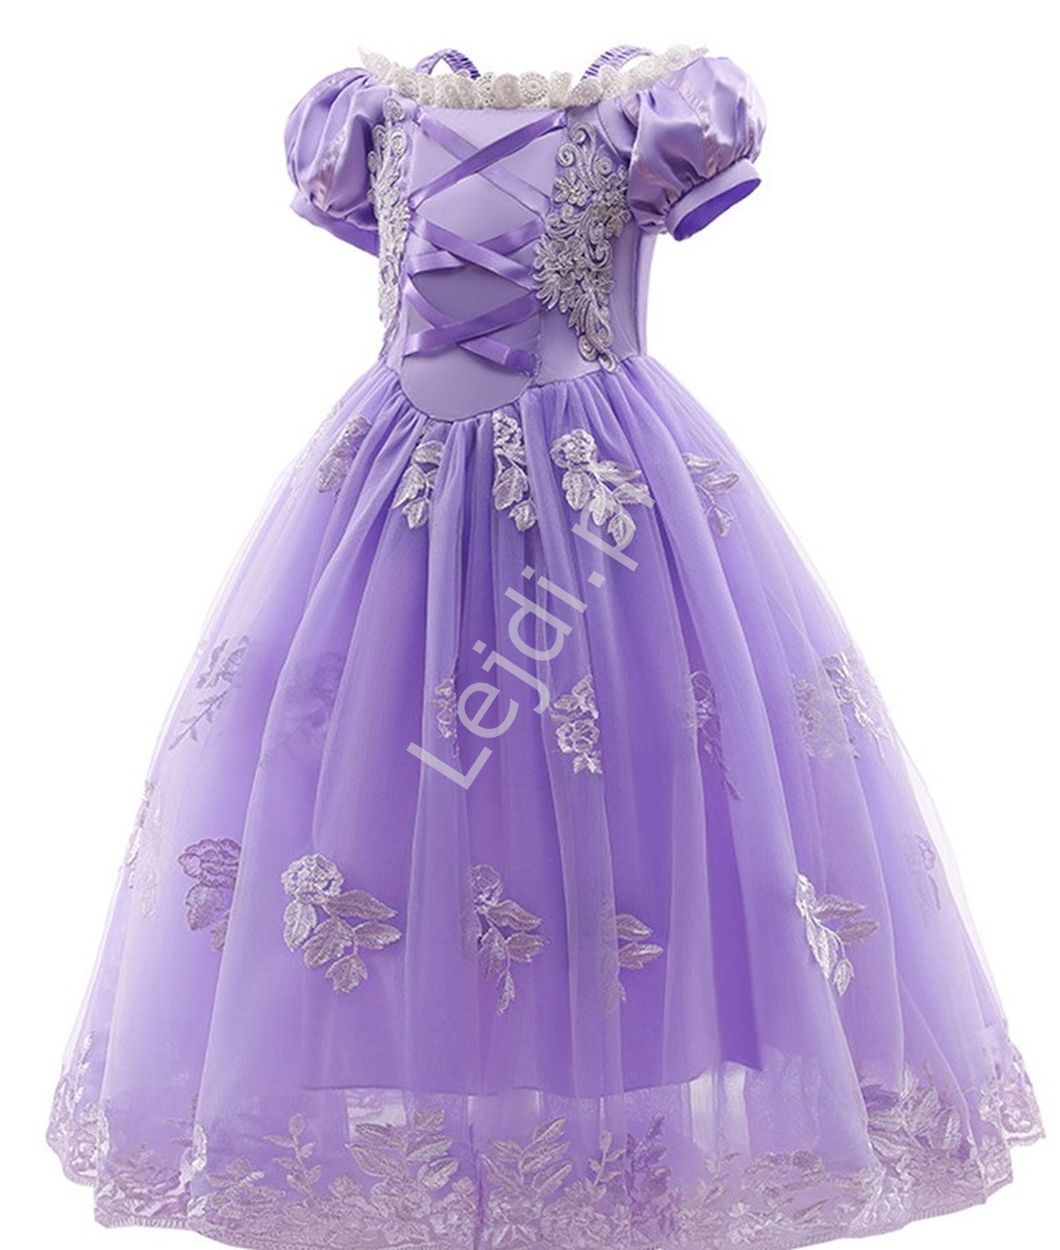 Księżniczka Disneya, dziecięca sukienka Roszpunki na bal